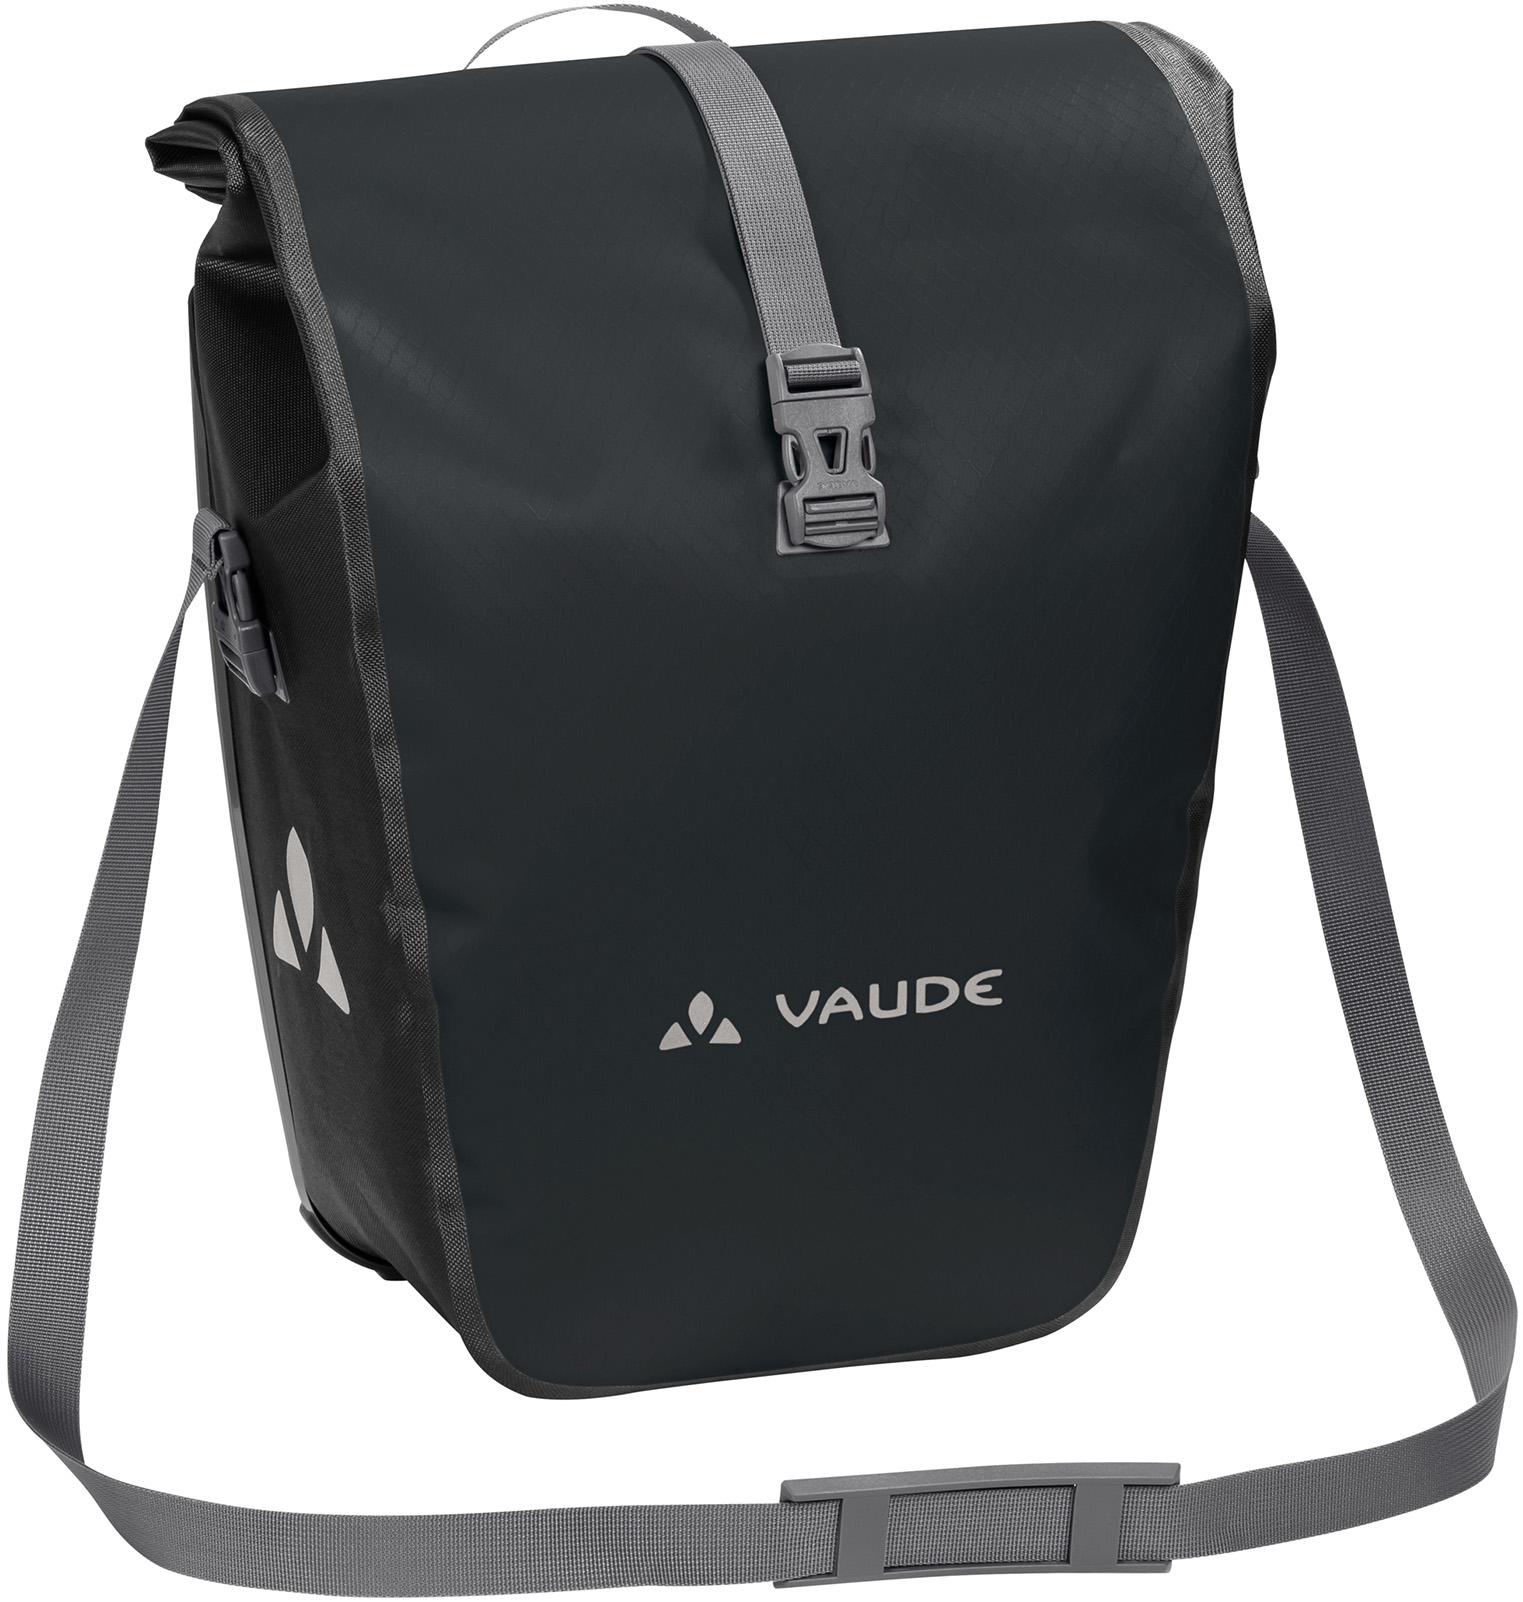 Vaude Aqua Back Rear Pannier Bike Bag  Black